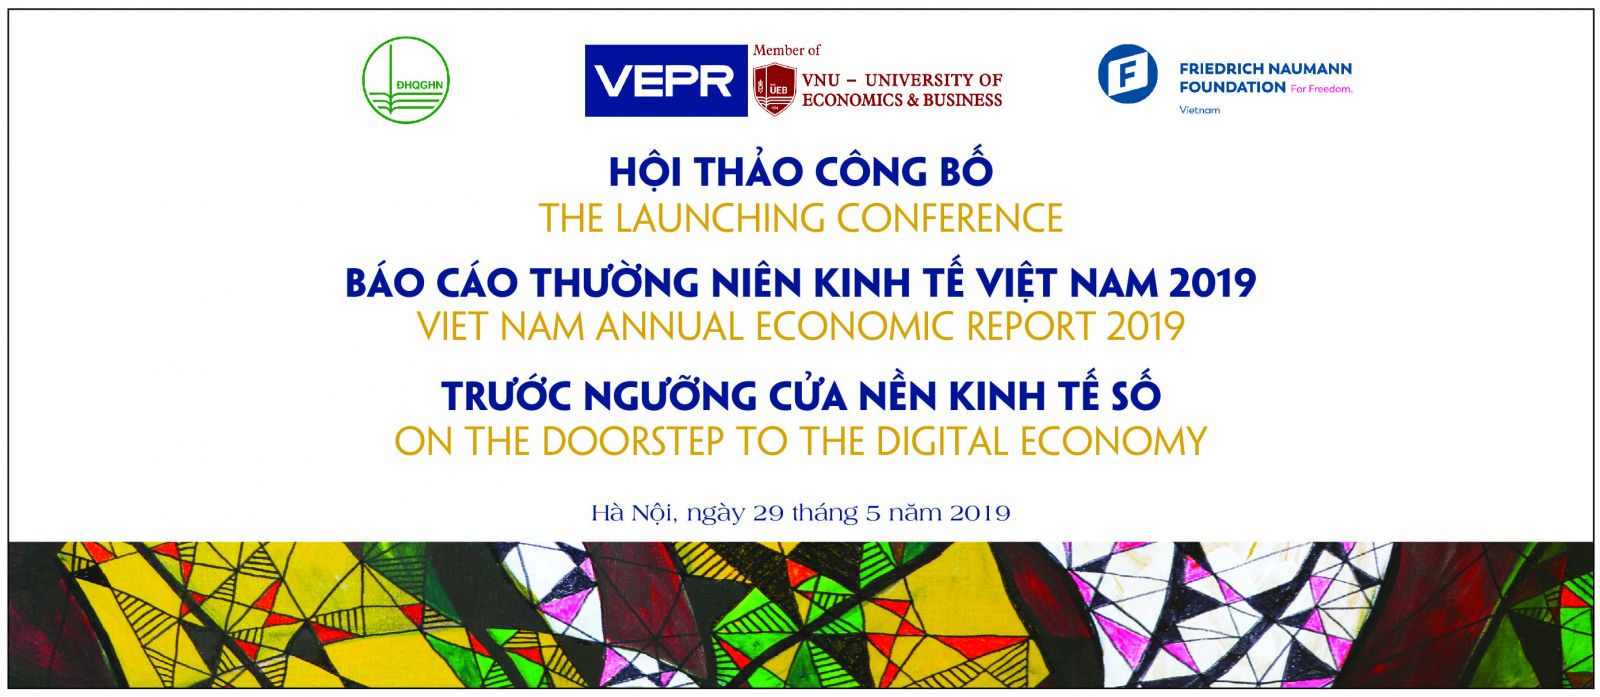 GIẤY MỜI: Tham dự Hội thảo Công bố Báo cáo Thường niên Kinh tế Việt Nam 2019 